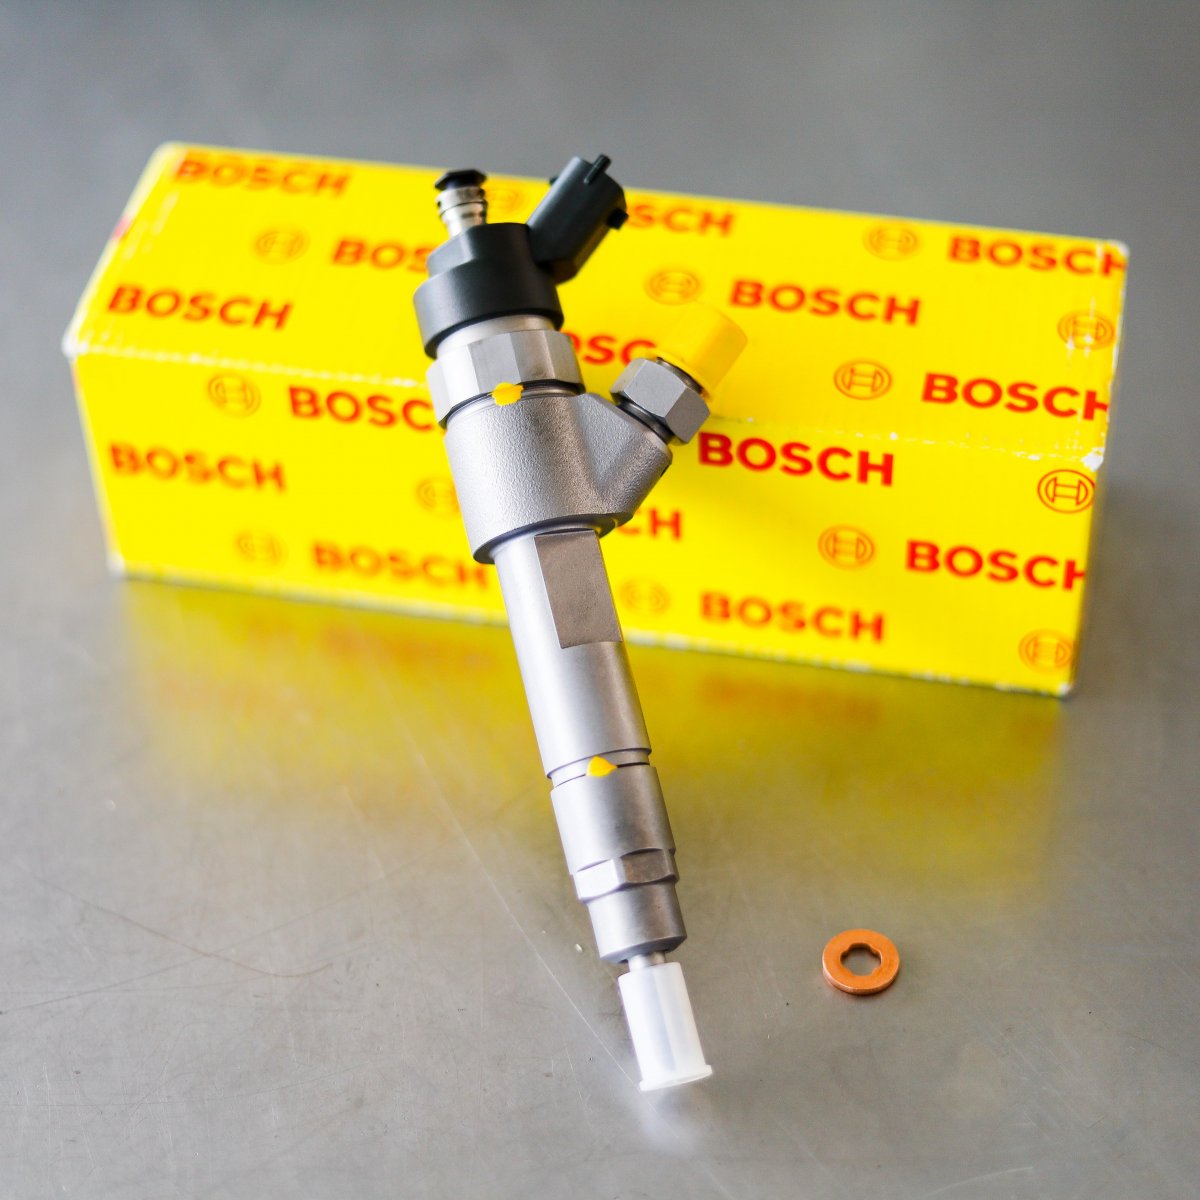 Wtryskiwacz Bosch po naprawie gotowy do wysłania do serwisu na gwarancji na okres 2 lat - niska cena